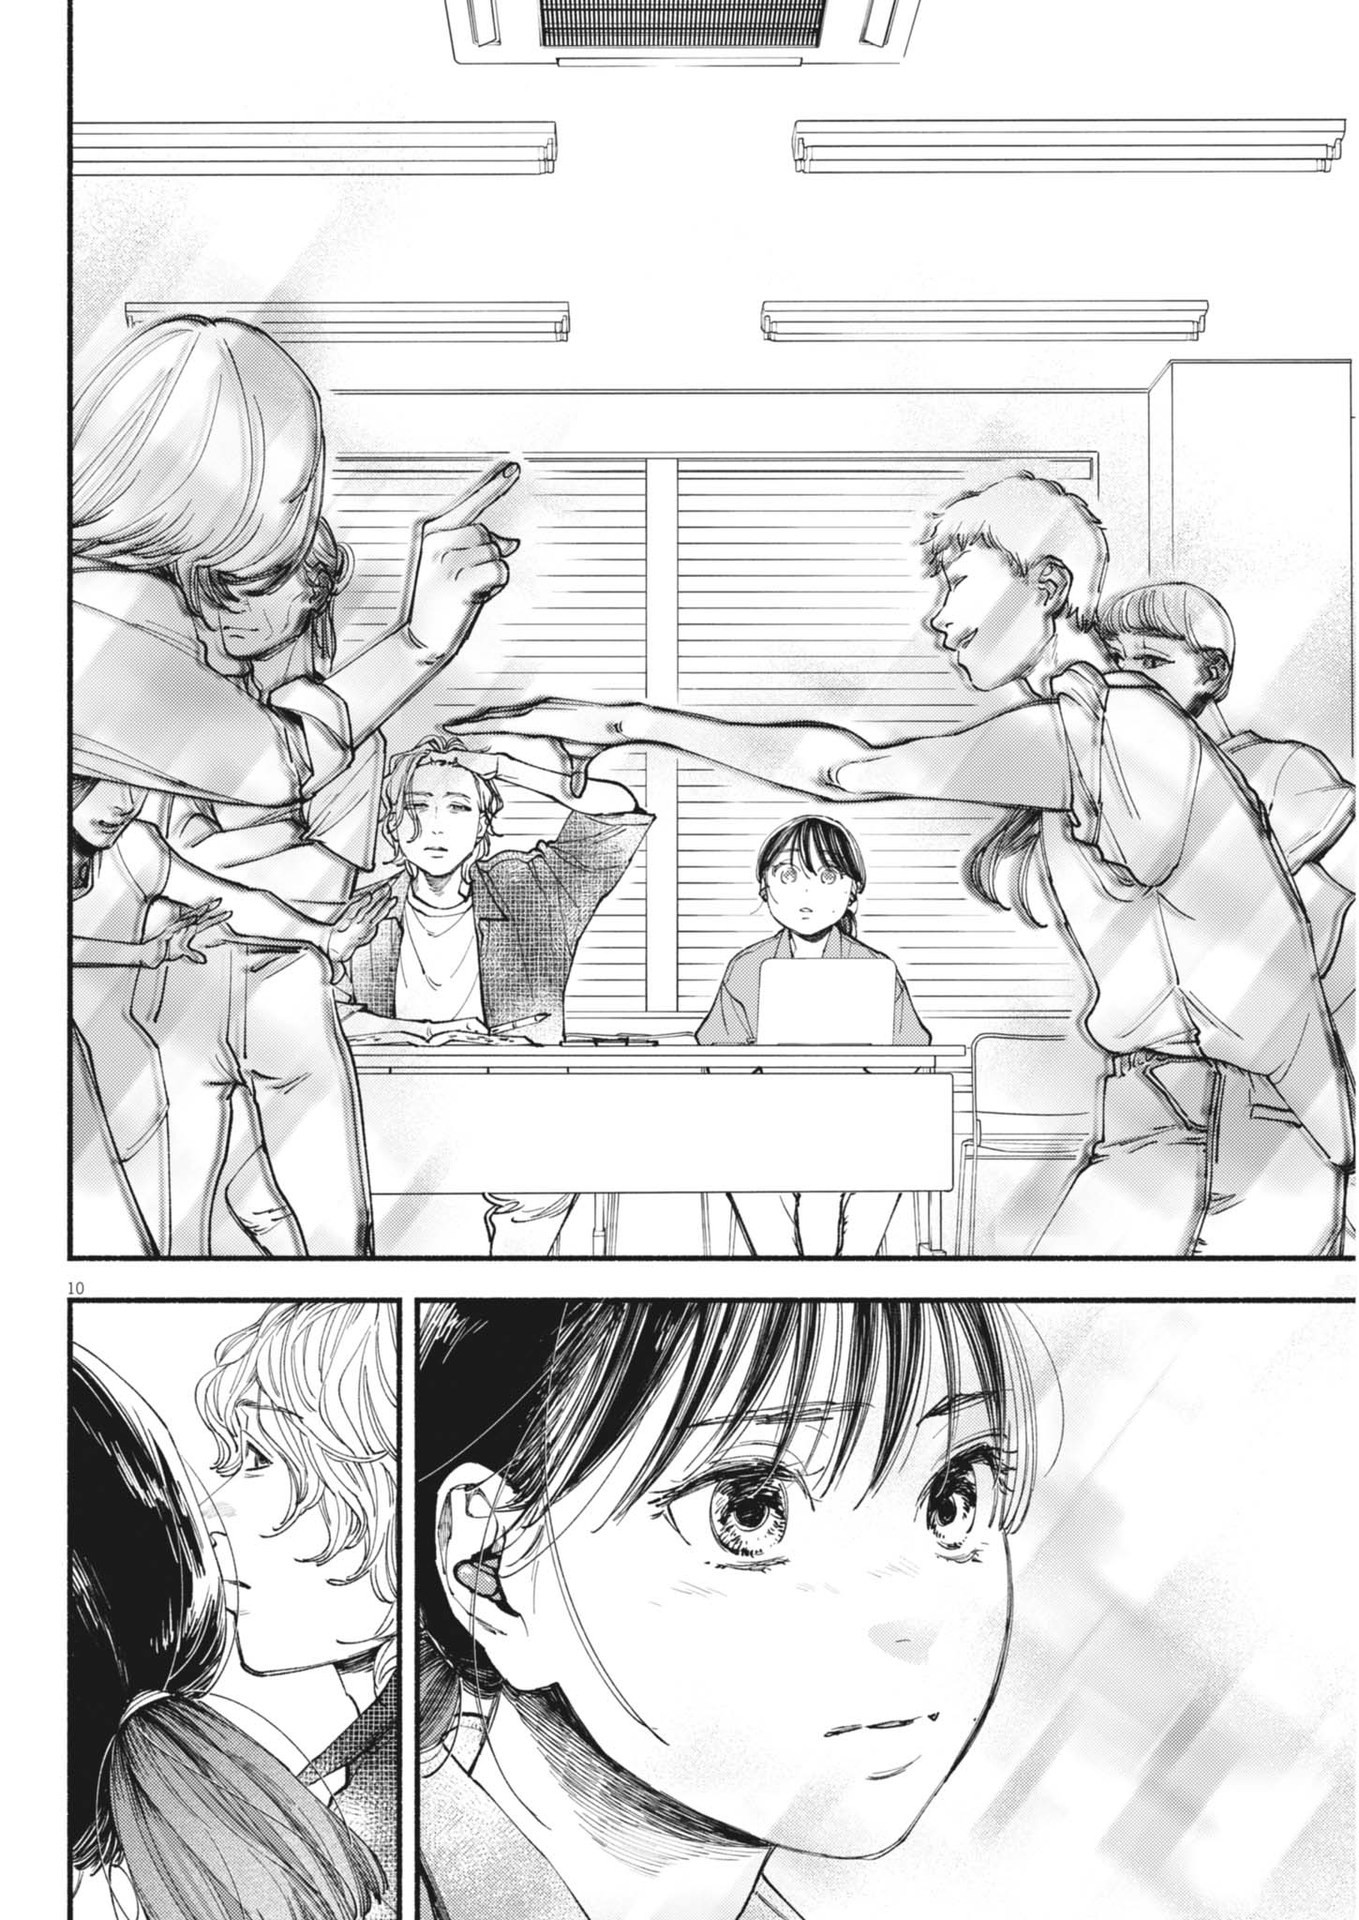 Konoyo wa Tatakau Kachi ga Aru  - Chapter 28 - Page 10